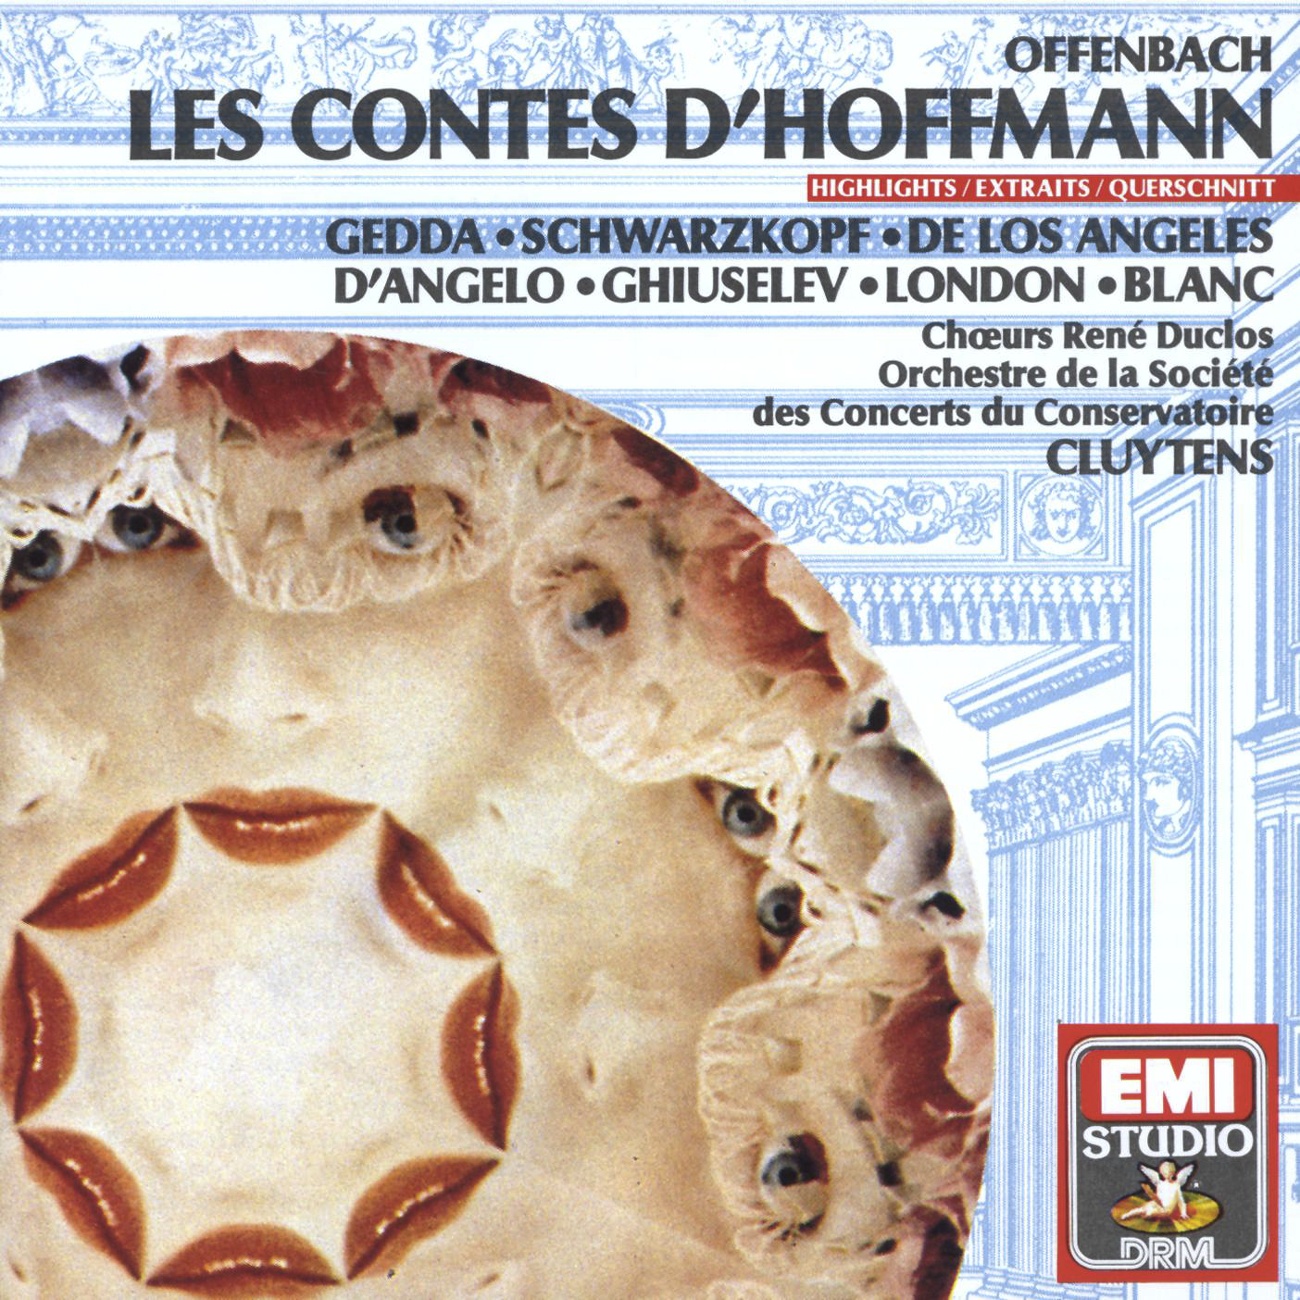 Les Contes d'Hoffmann (1989 Digital Remaster), DEUXIEME ACTE/ACT TWO/ZWEITER AKT: Les oiseaux dans la charmille (Chanson de la p